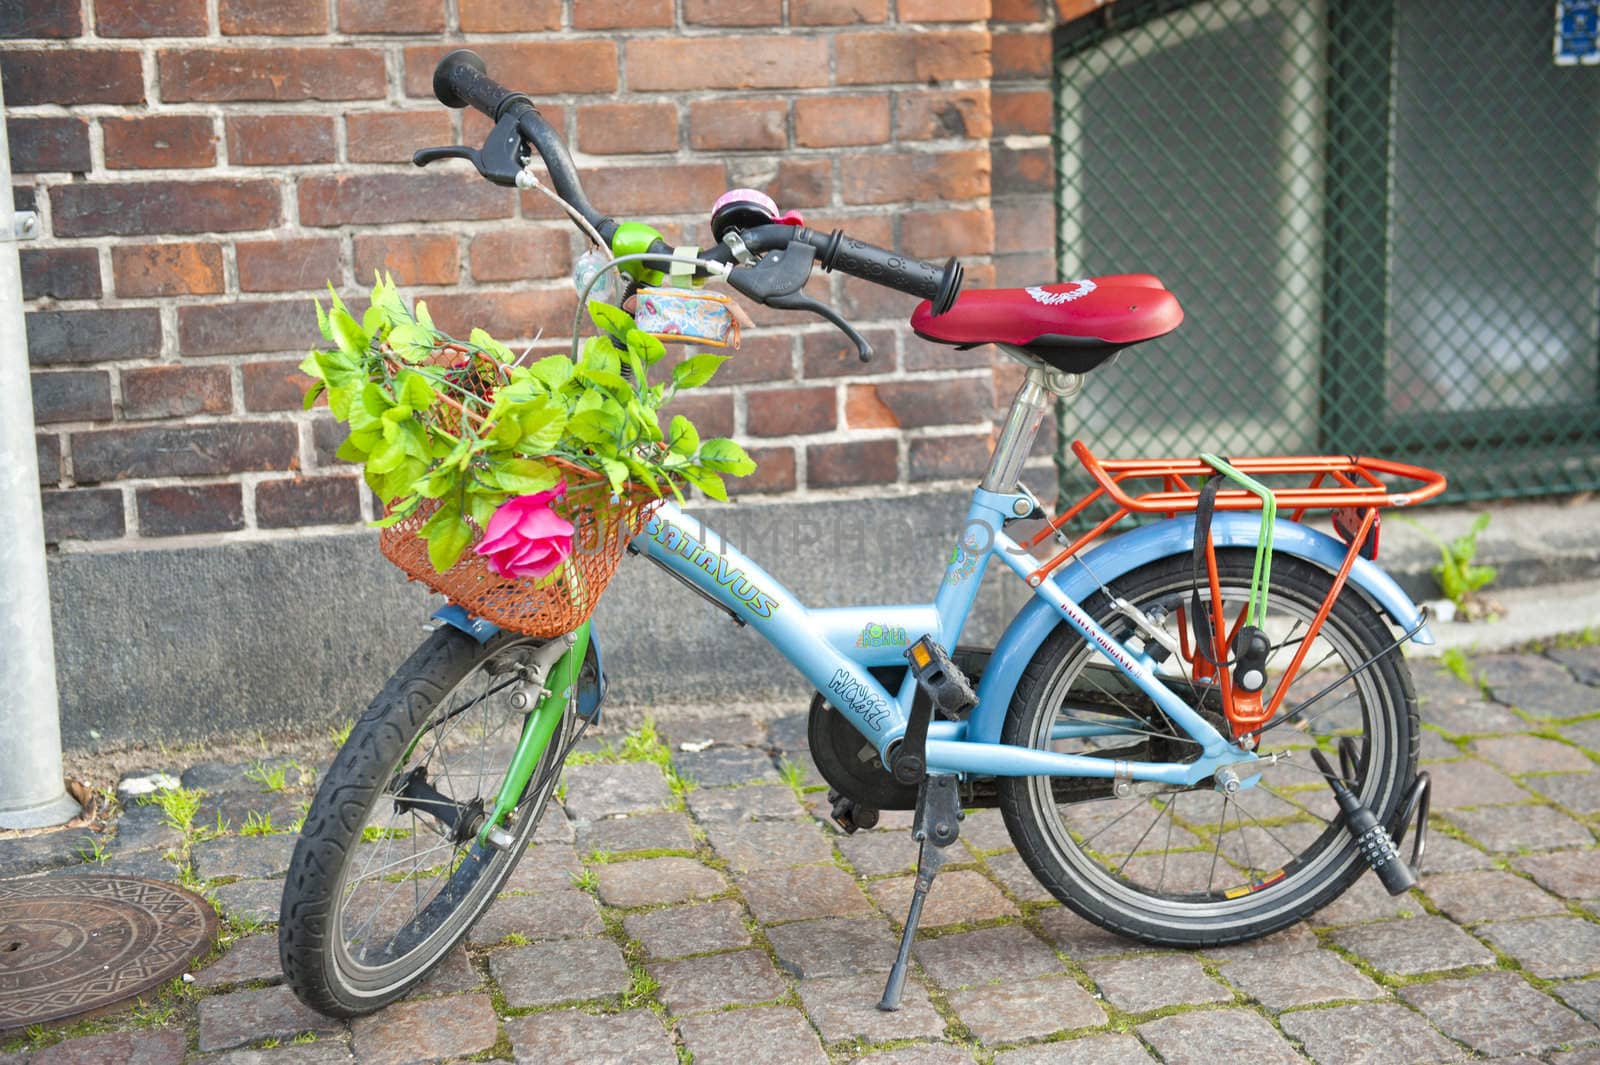 Children's bicyclein the Copehhagen street,Denmark